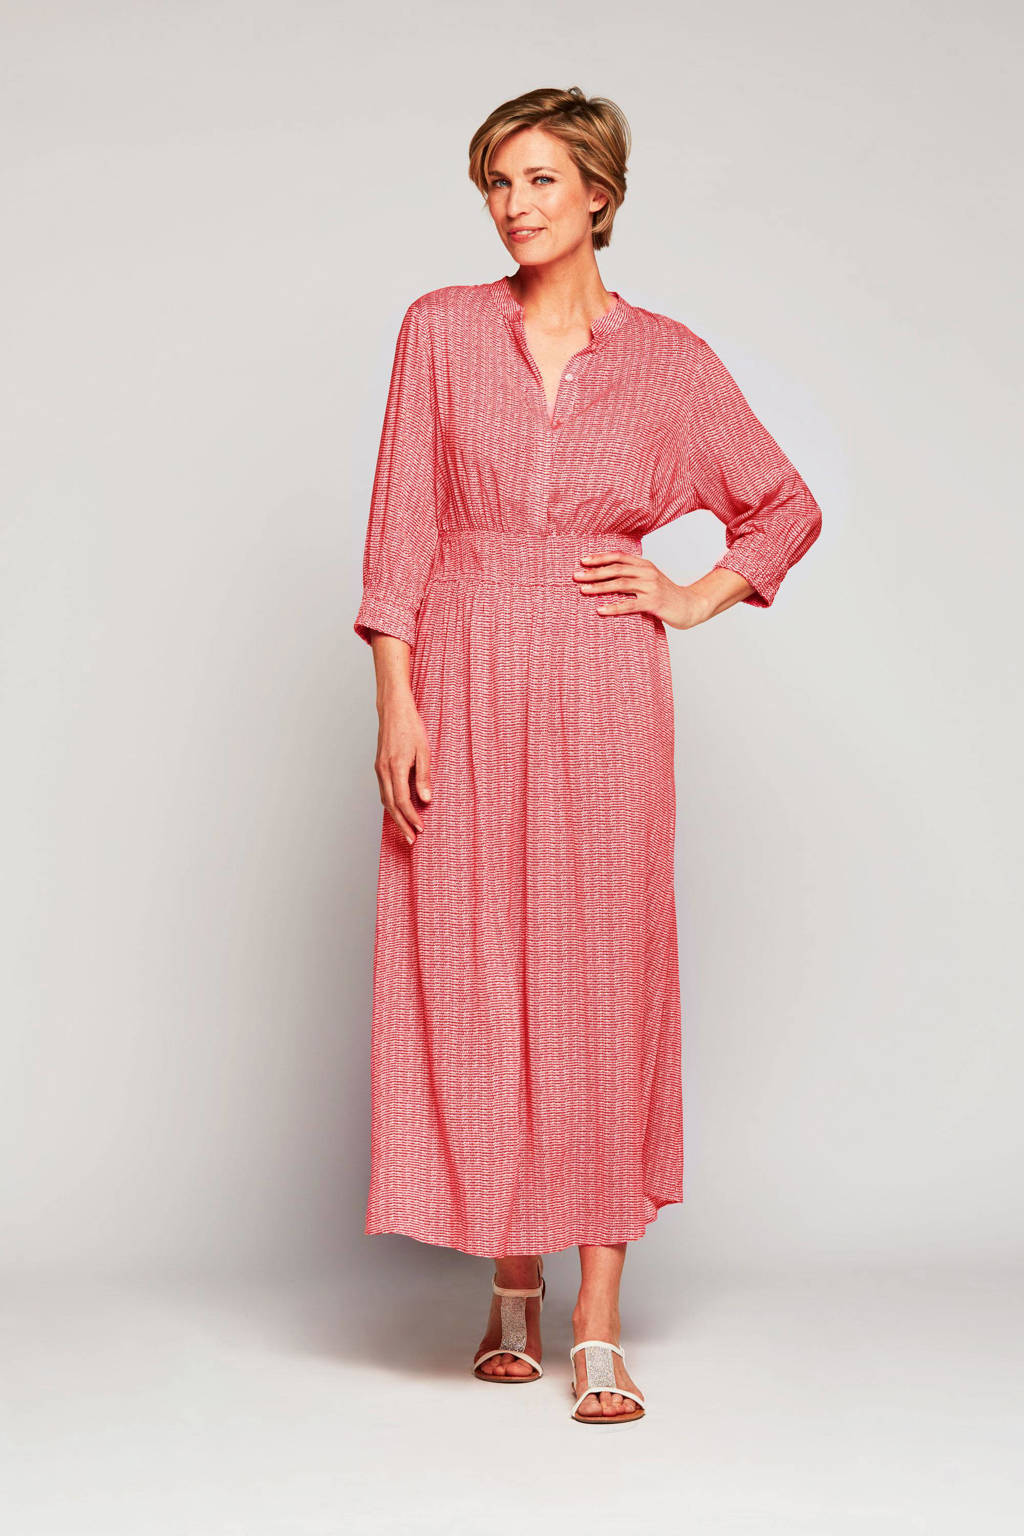 Mart Visser Caroline Tensen Collection by Mart Visser maxi jurk Barcelona met all over print roze/wit